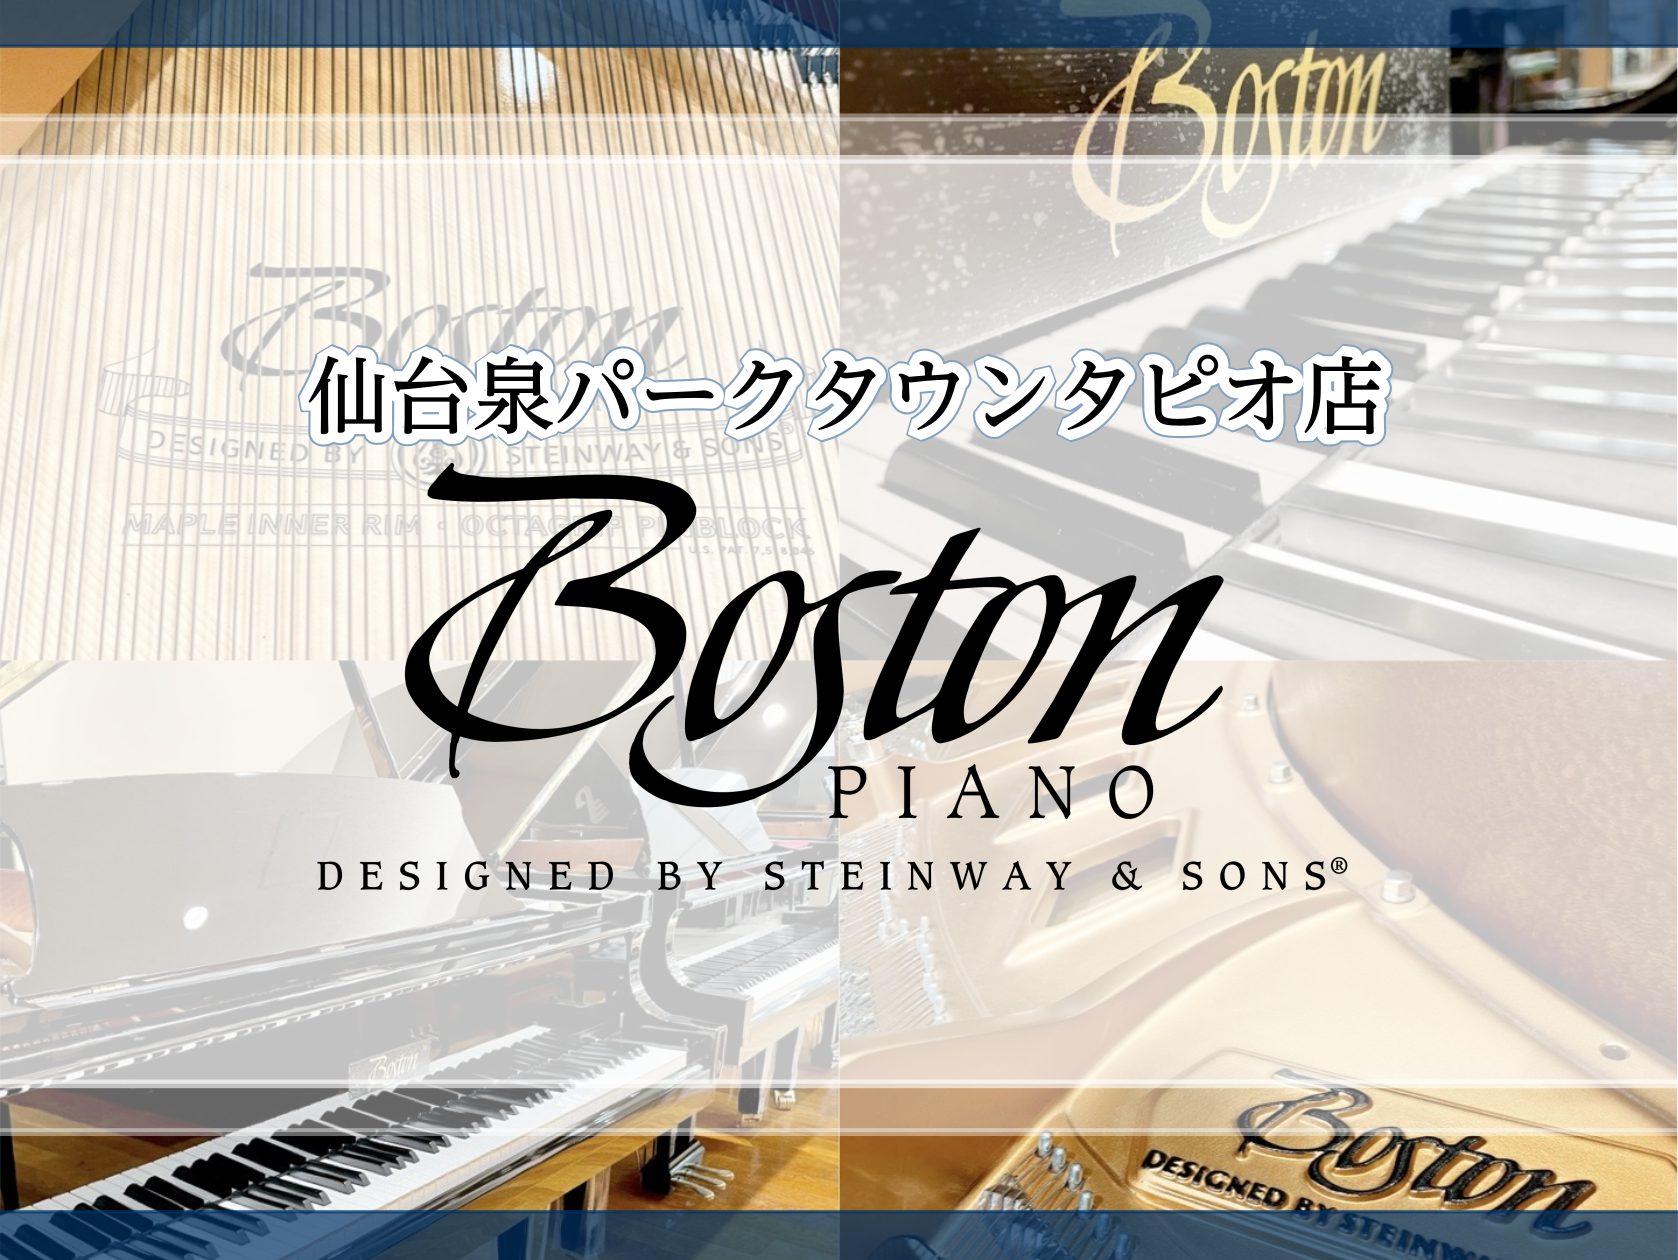 CONTENTSボストンピアノの魅力ボストン（BOSTON）グランドピアノ展示ラインナップボストン（BOSTON）アップライトピアノ展示ラインナップボストンイベントボストンピアノの魅力 スタインウェイ＆サンズは1853年に「可能な限り最高のピアノを作る」をビジョンとして掲げ創業、現在においても世界で […]